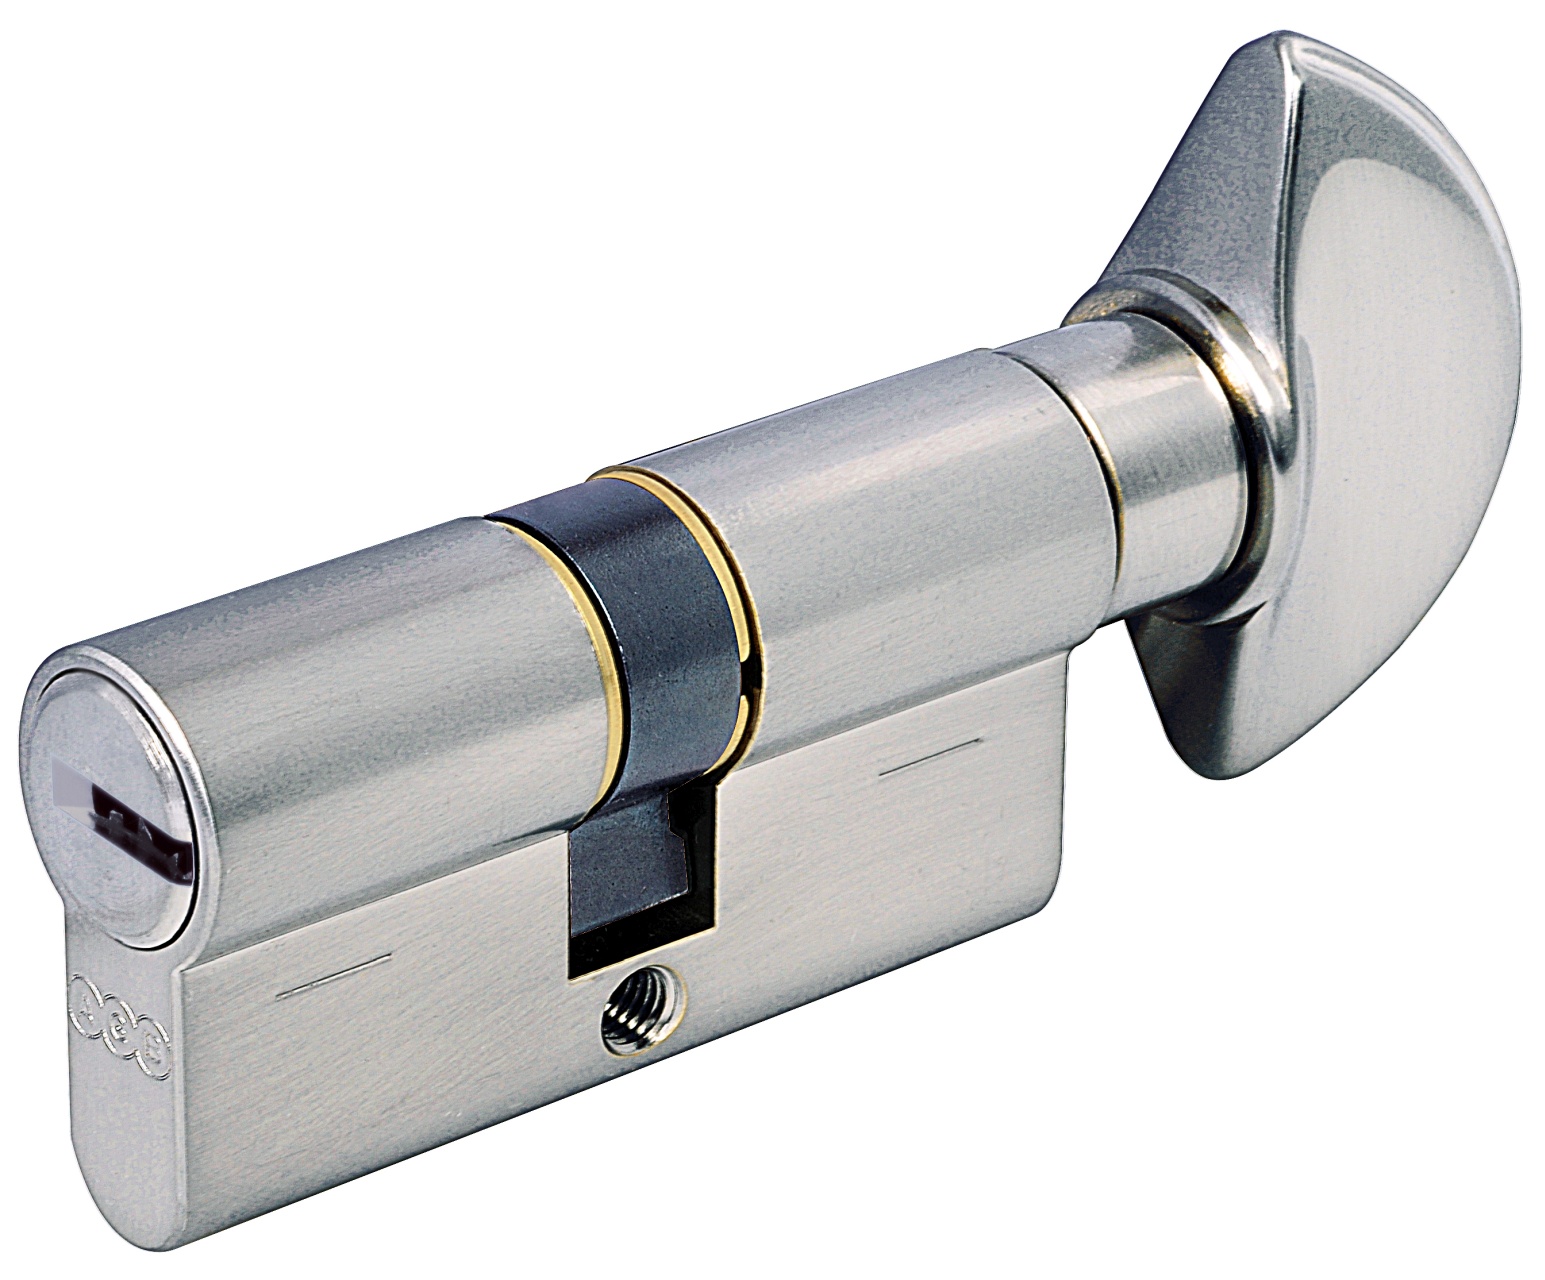 AGB -  Cilindro SCUDO 5000 PS frizionato anti bamping con chiave e pomolo - col. NICHELATO OPACO - lunghezza 95 - misura P-40-10-35